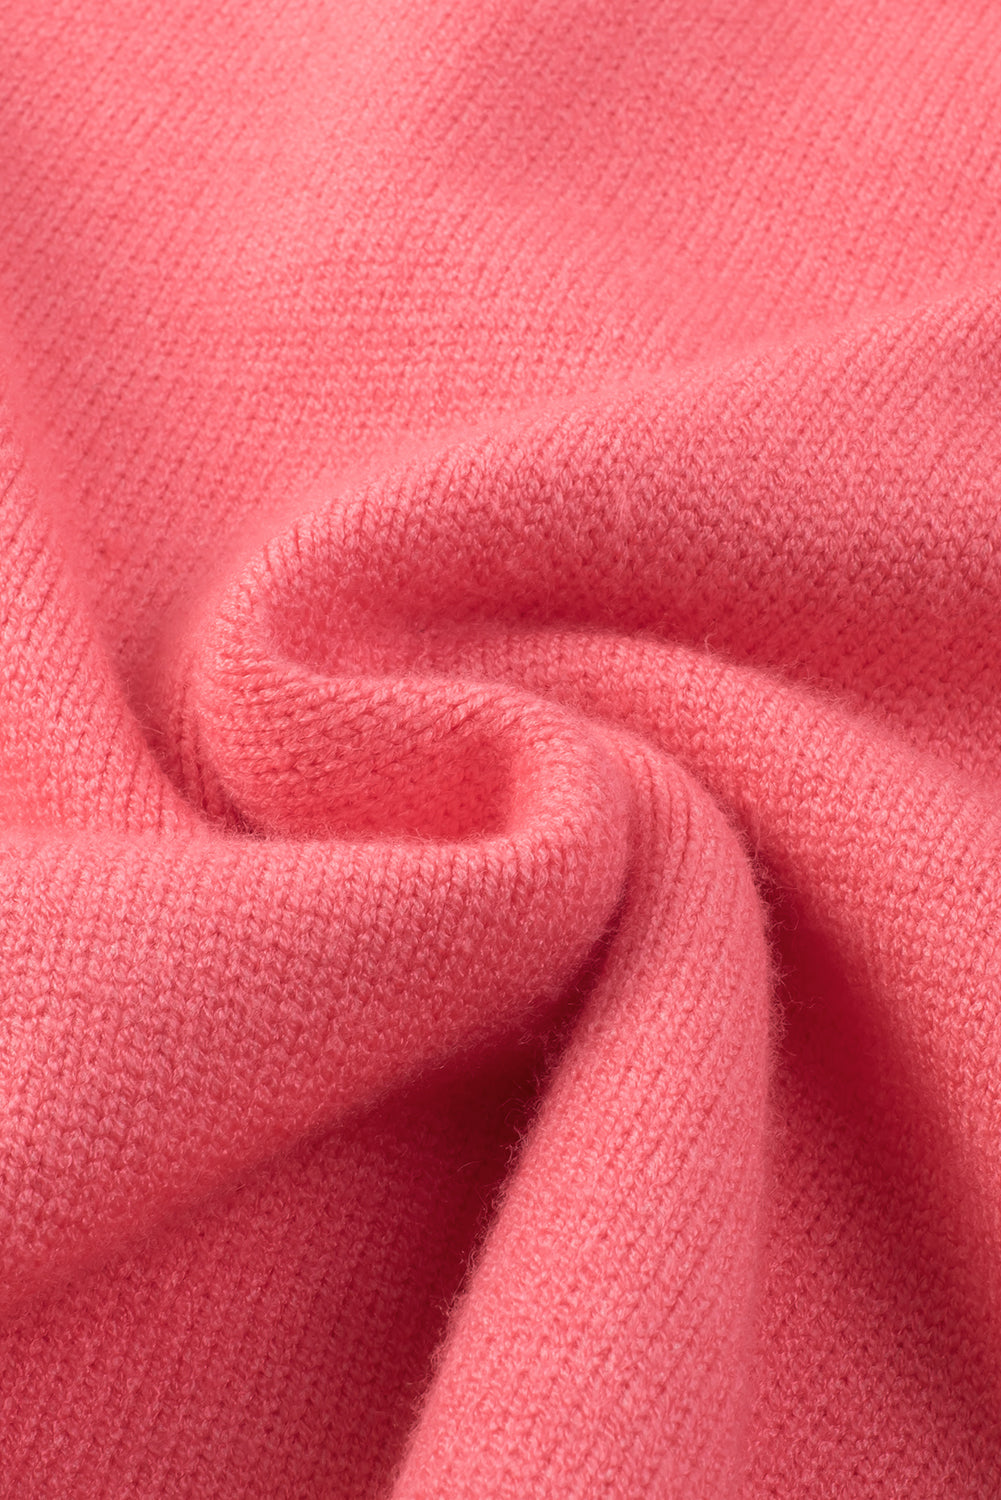 Ružičasti pulover s V izrezom spuštenih ramena veće veličine